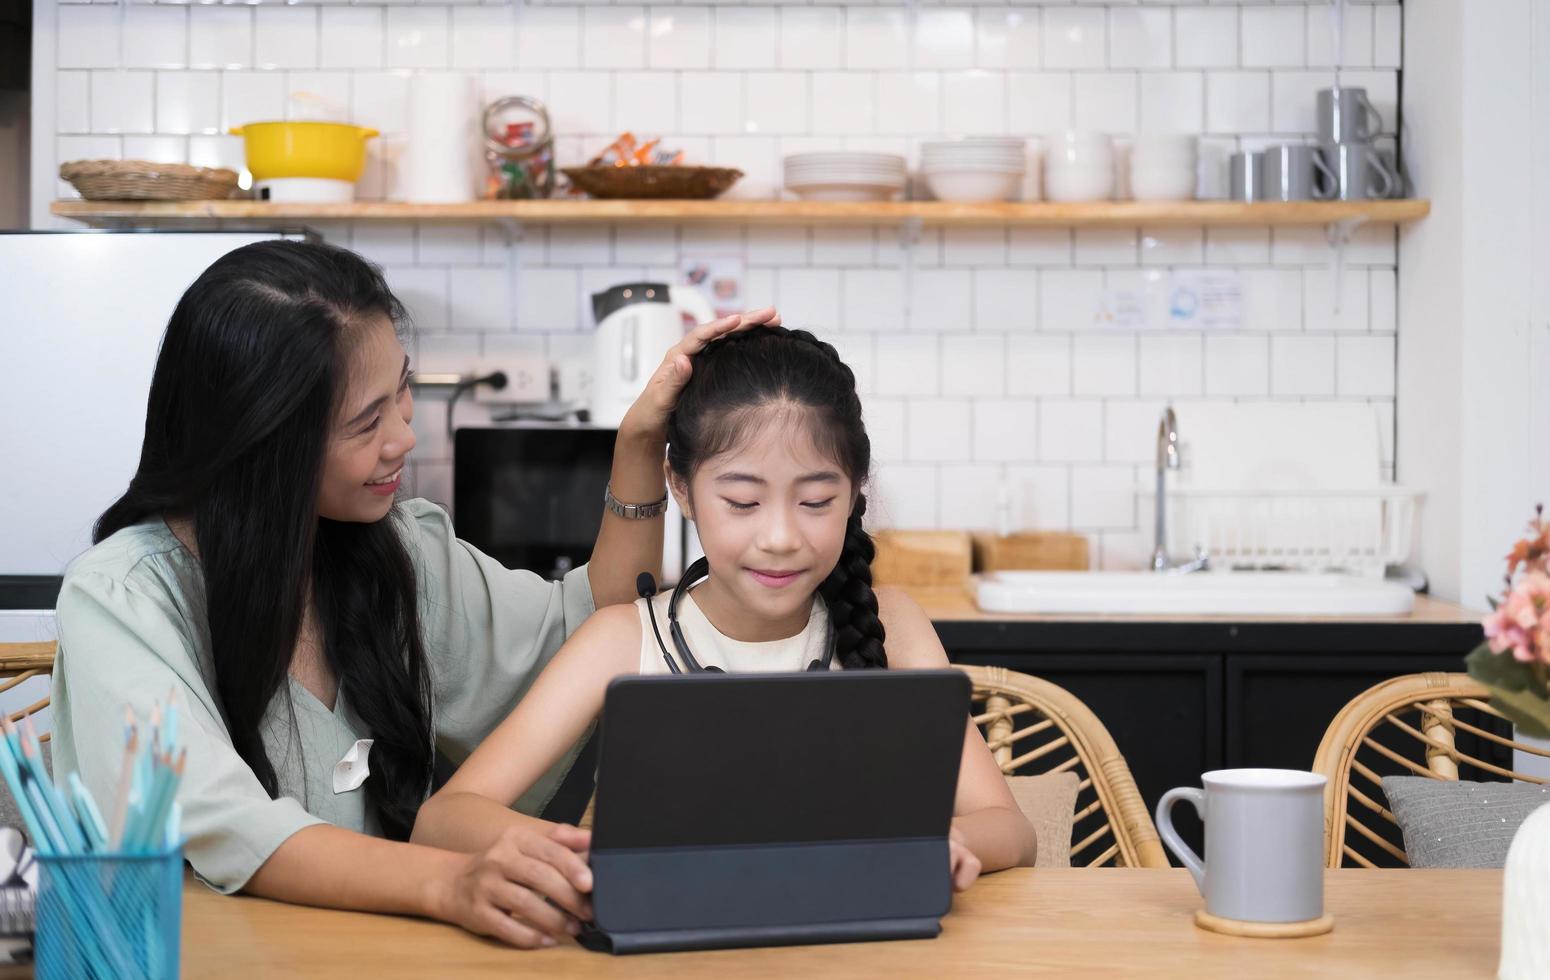 madre e bambino asiatico bambina che impara e guarda il computer portatile che fa i compiti studiando con il sistema di e-learning per l'istruzione online. videoconferenza per bambini con insegnante tutor a casa foto